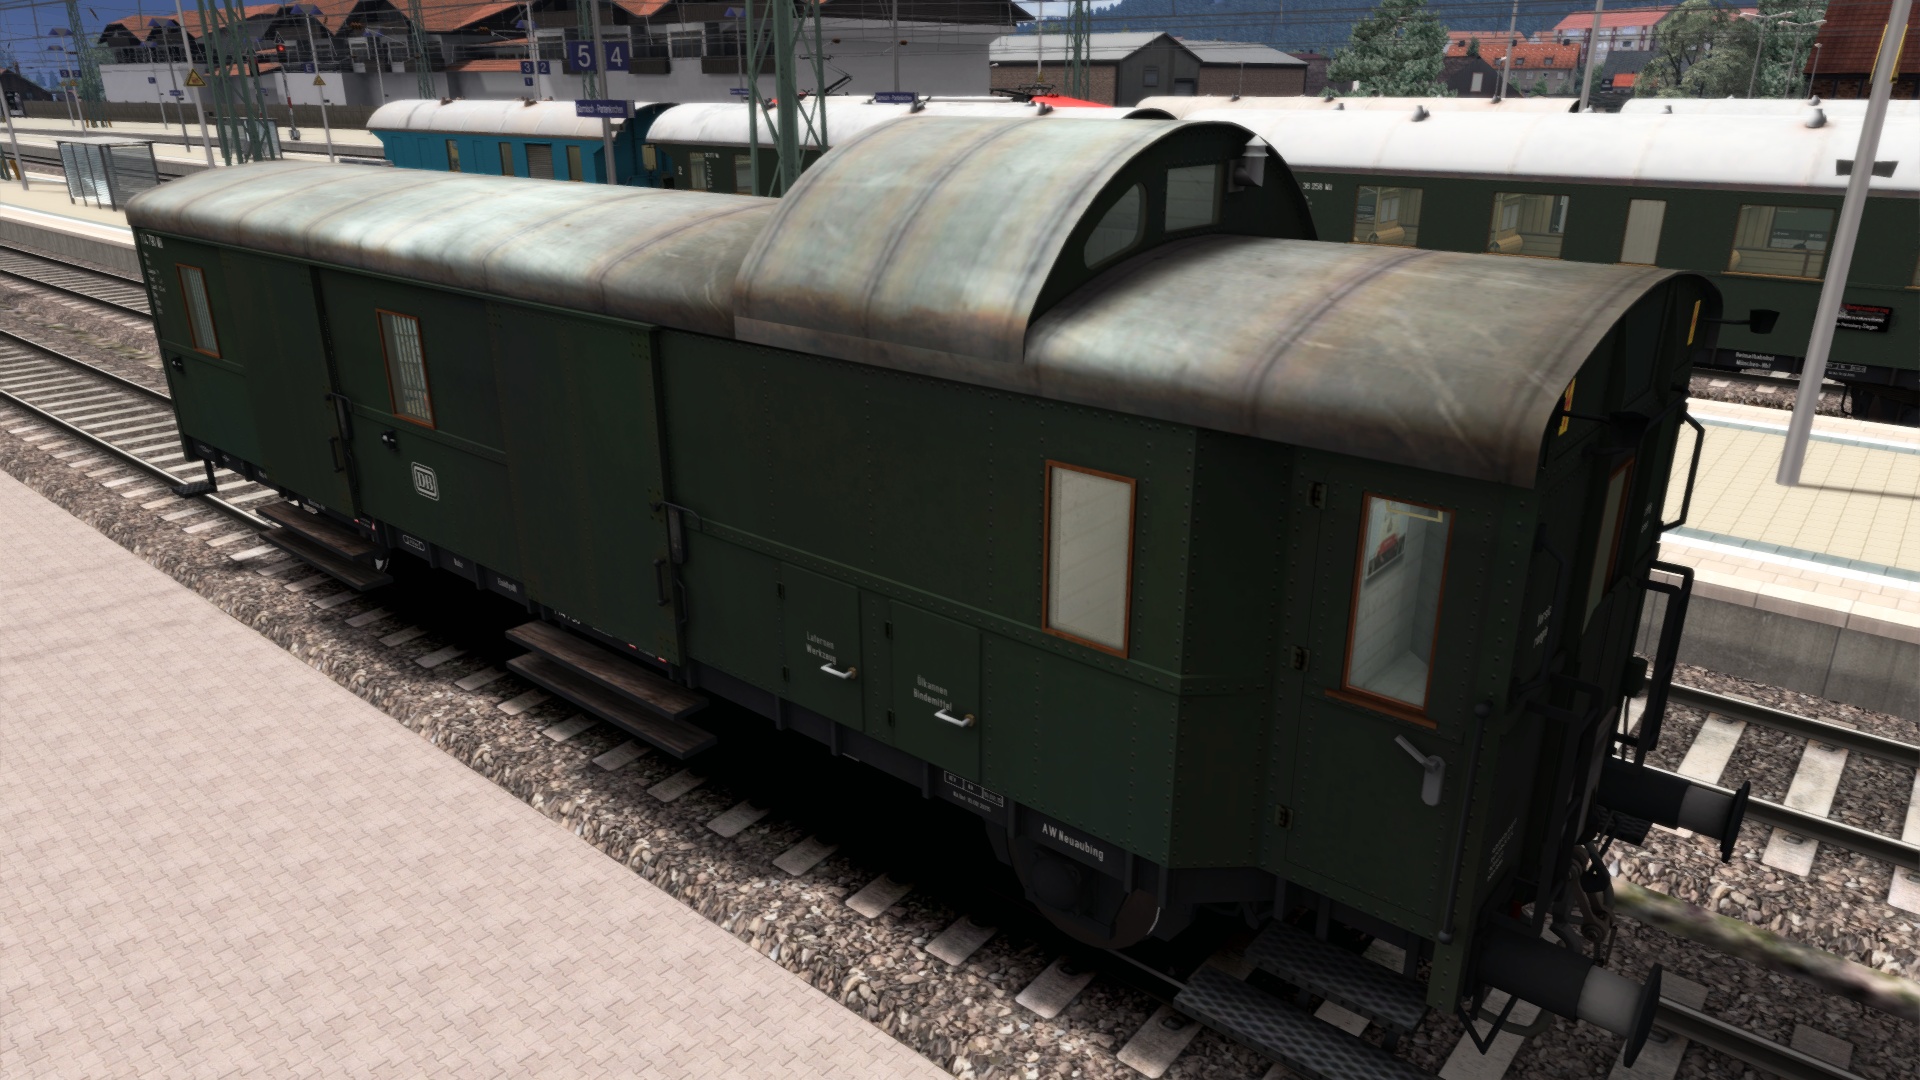 Raildriver zu verkaufen - Plauderecke -  - Die deutsche Train  Simulator Community